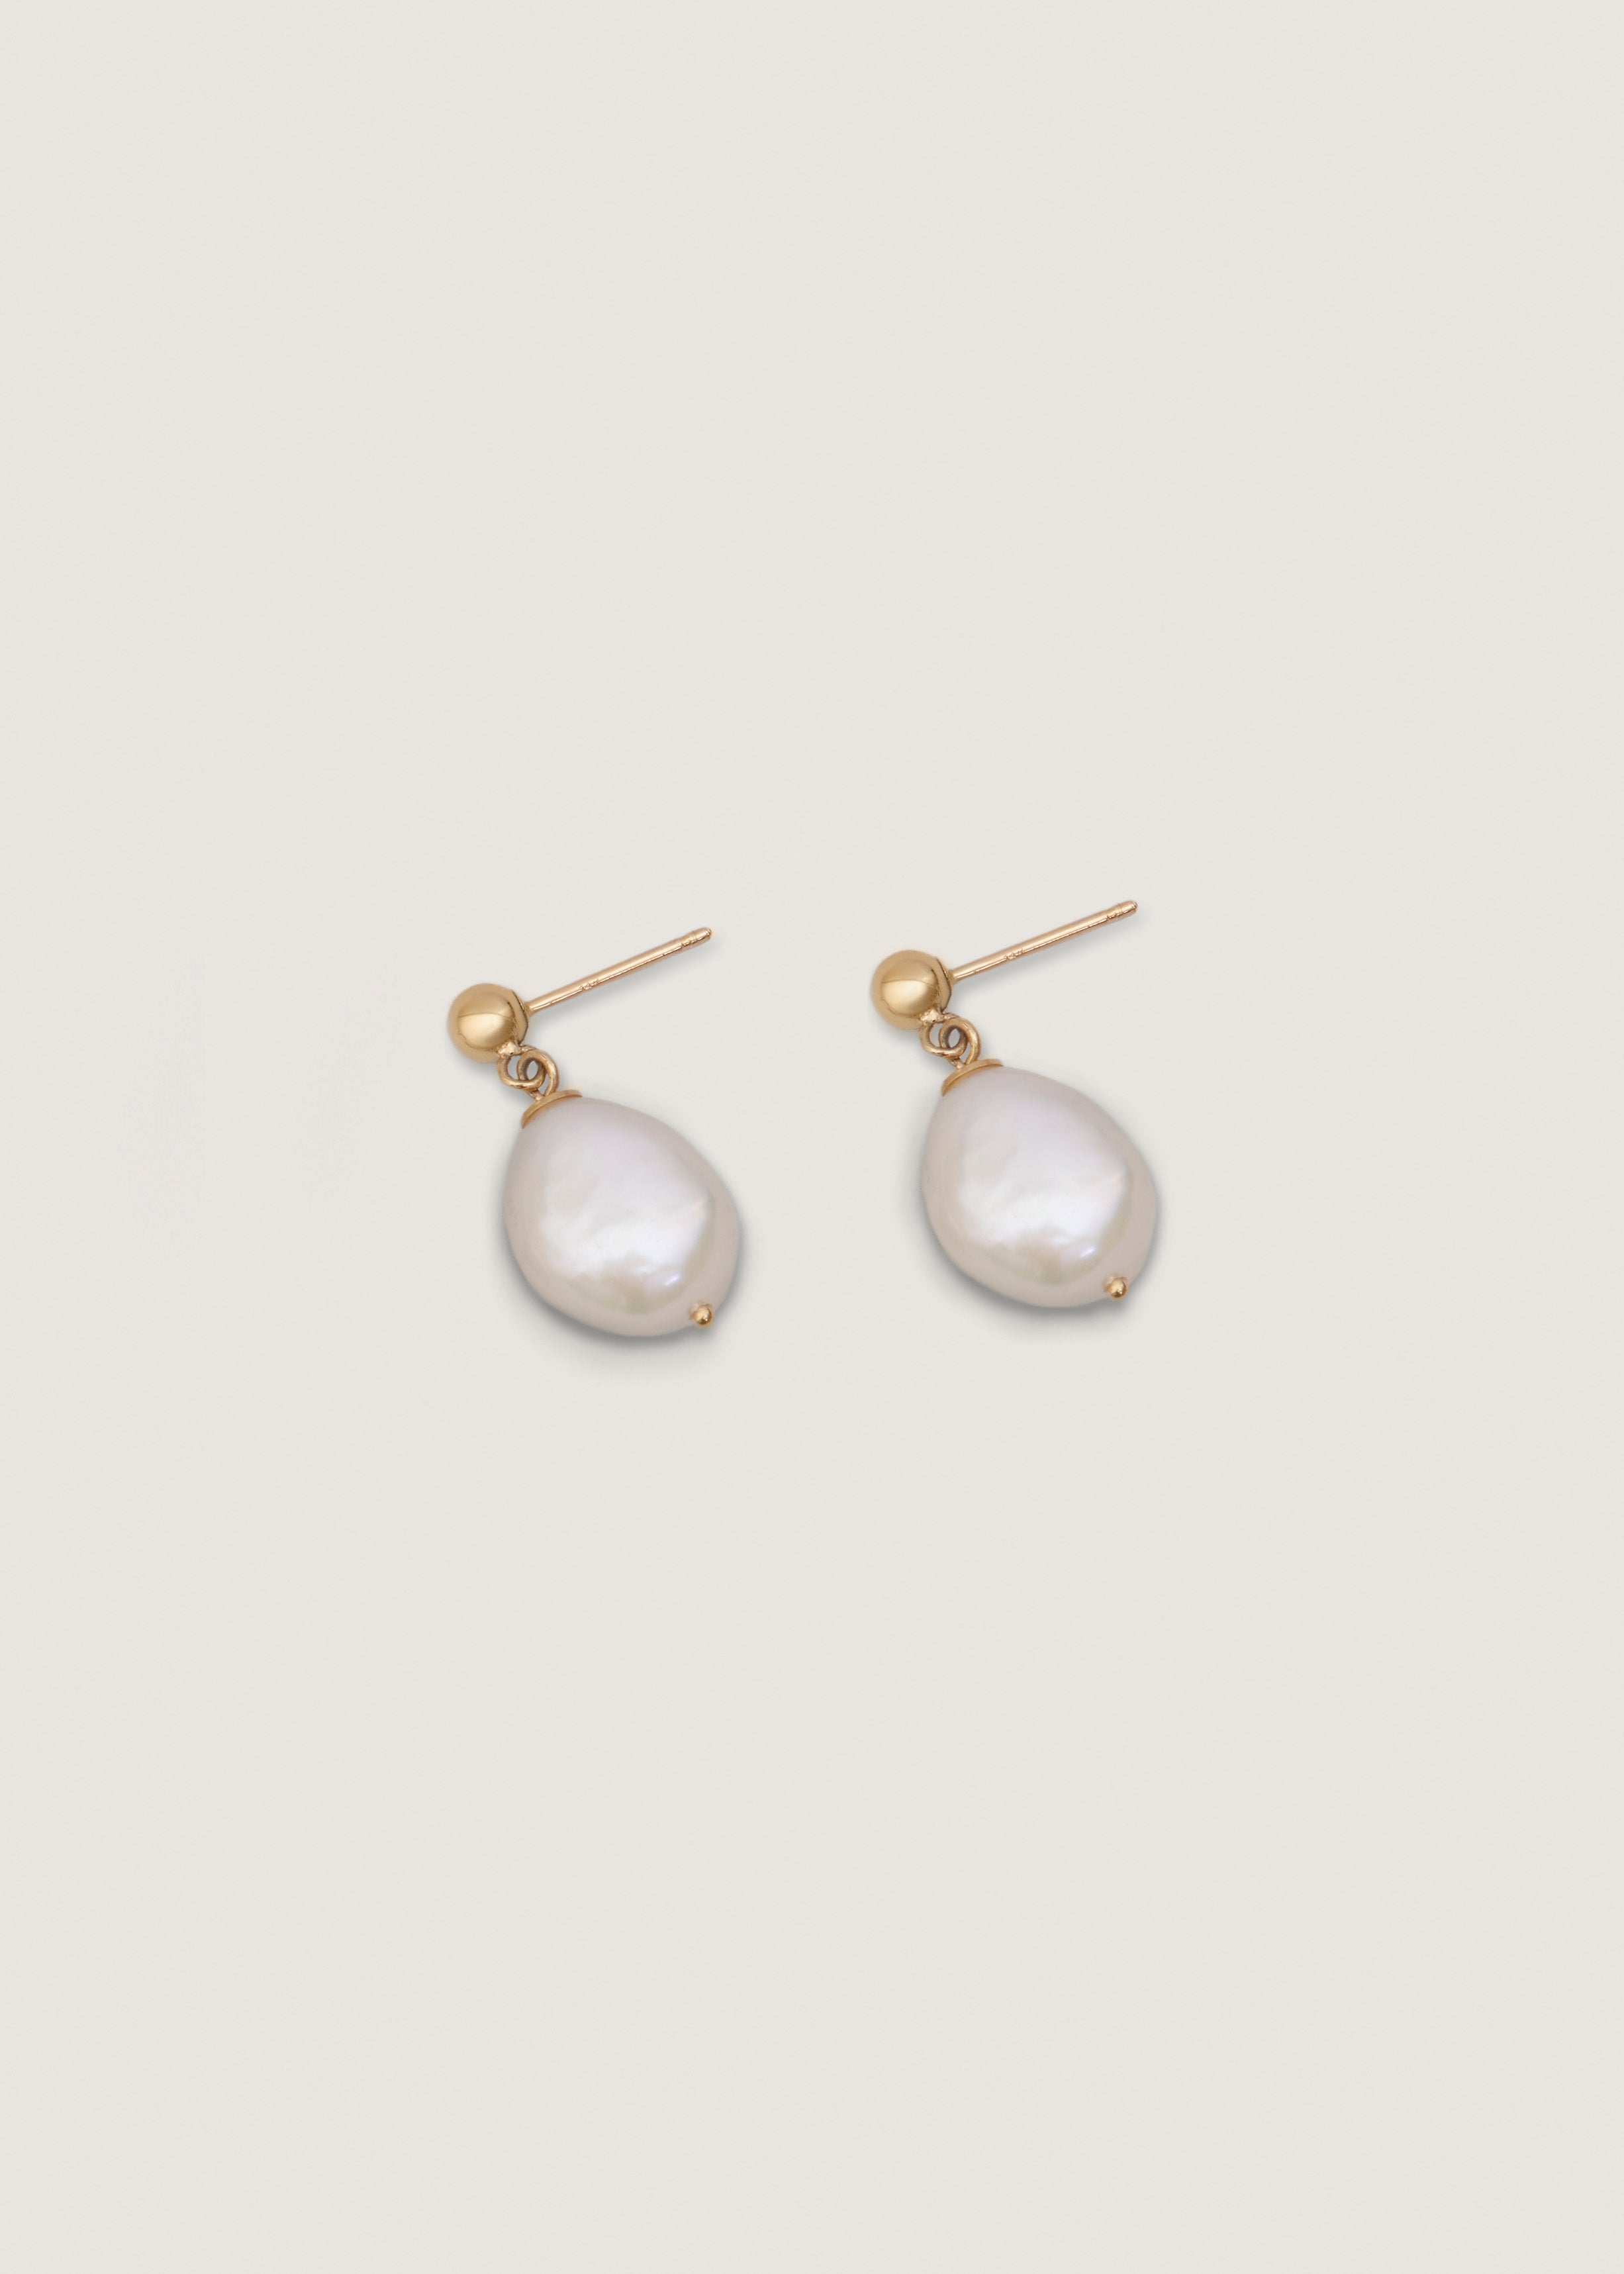 alt="Baroque Pearl Drop Earrings"